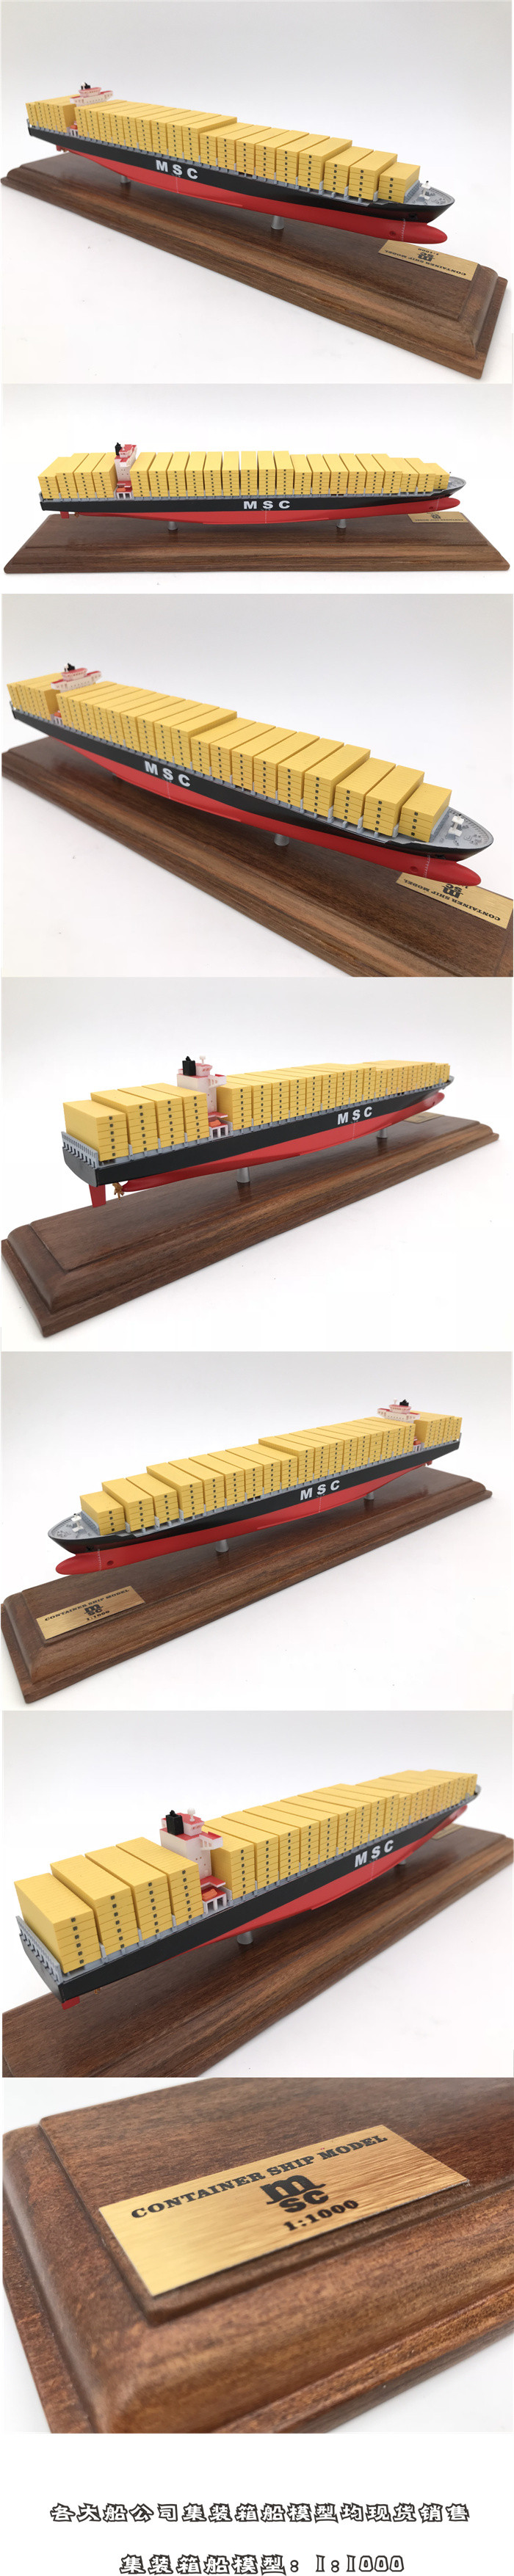 海艺坊集装箱船模型工厂批量生产集装箱船模型 货柜船模型批发定制 集装箱船模型定做